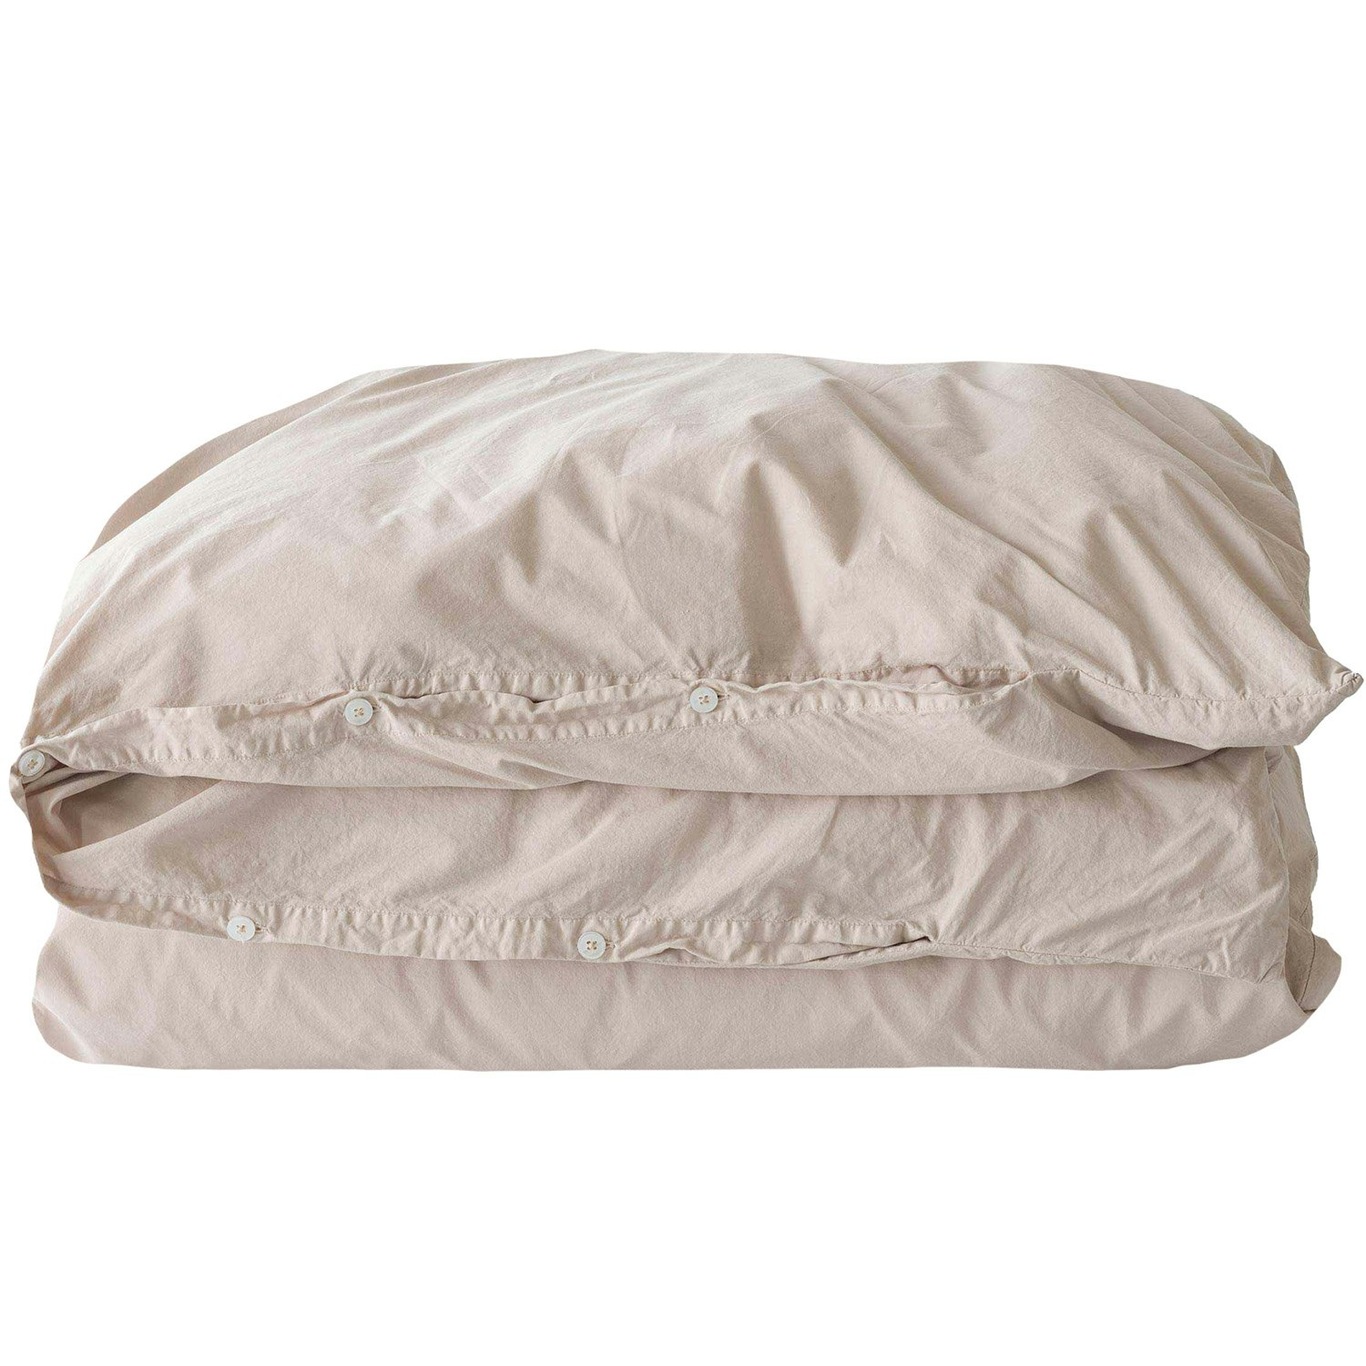 Bettdeckenbezug Organisch Baumwolle 150x200 cm, Shell